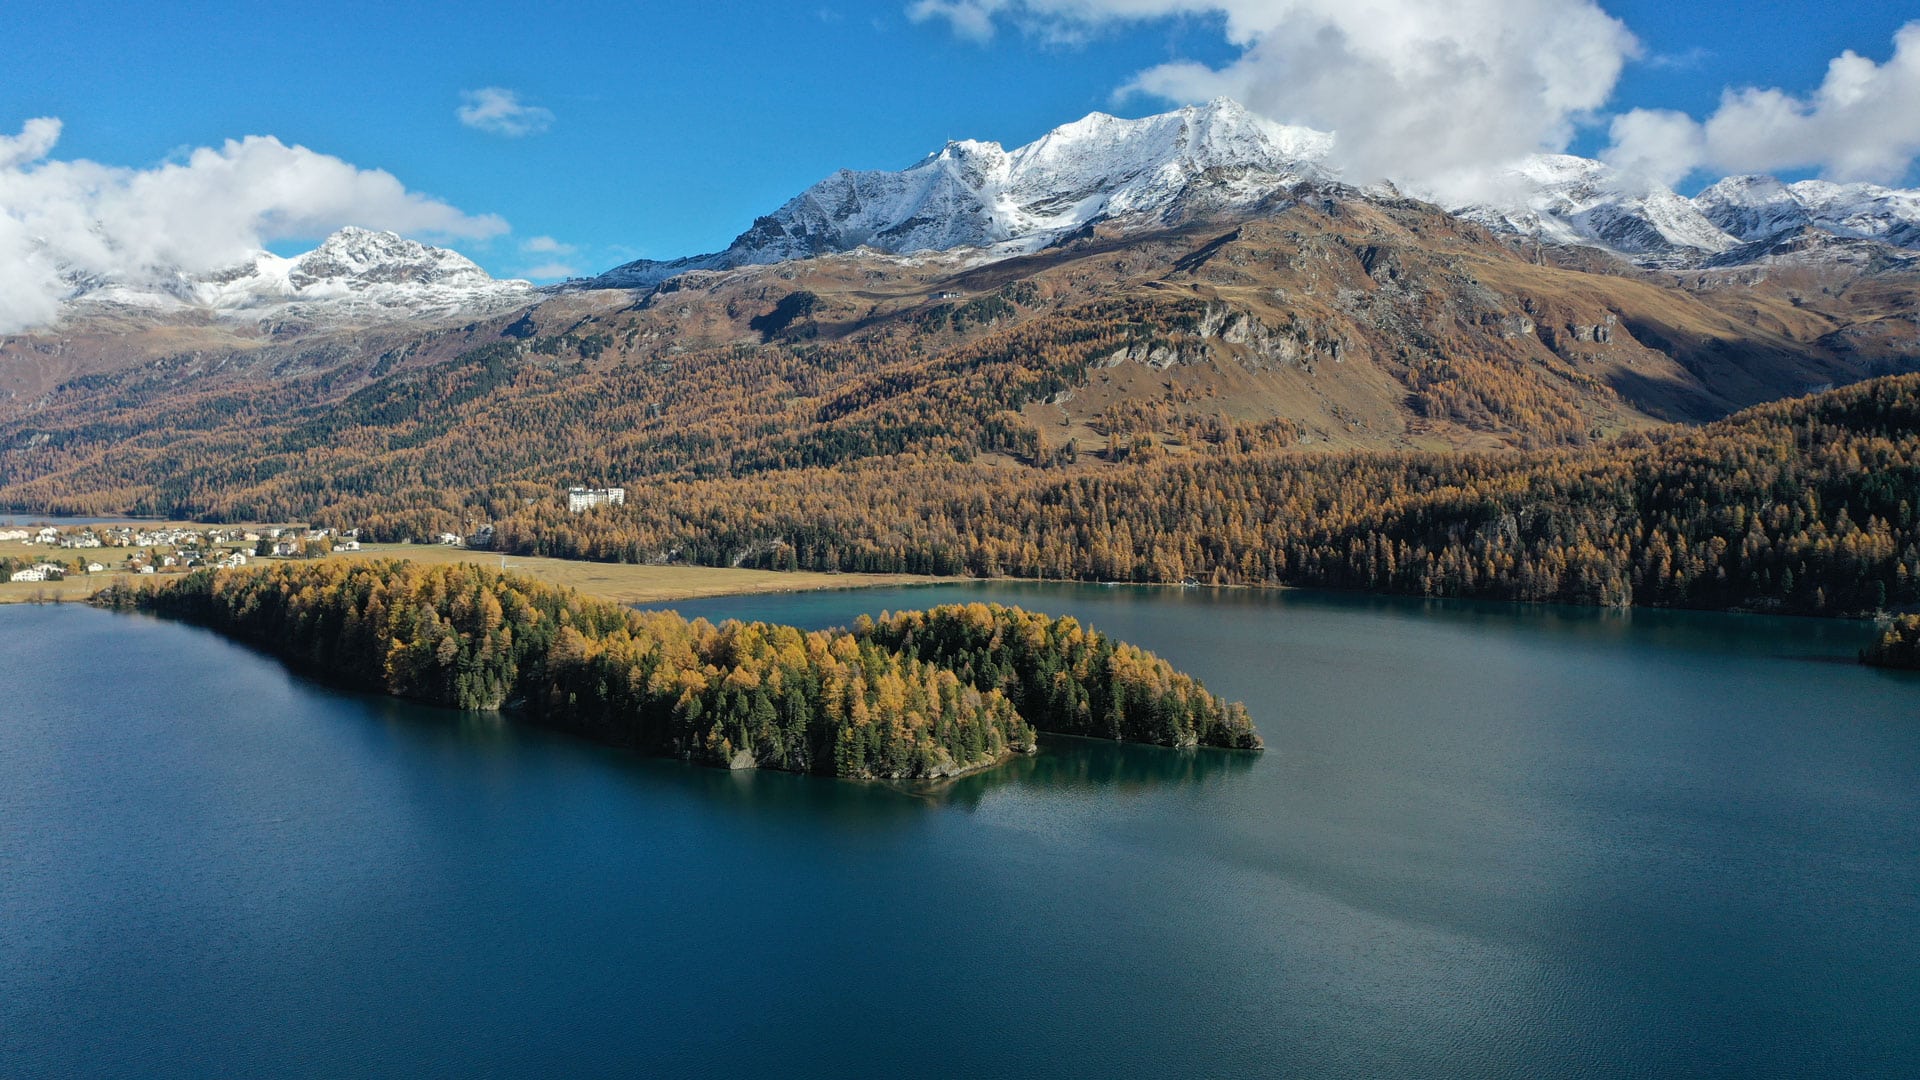 Graubünden 2 Days Private Tour – Davos, St.Moritz & it’s stunning nature (Zurich)